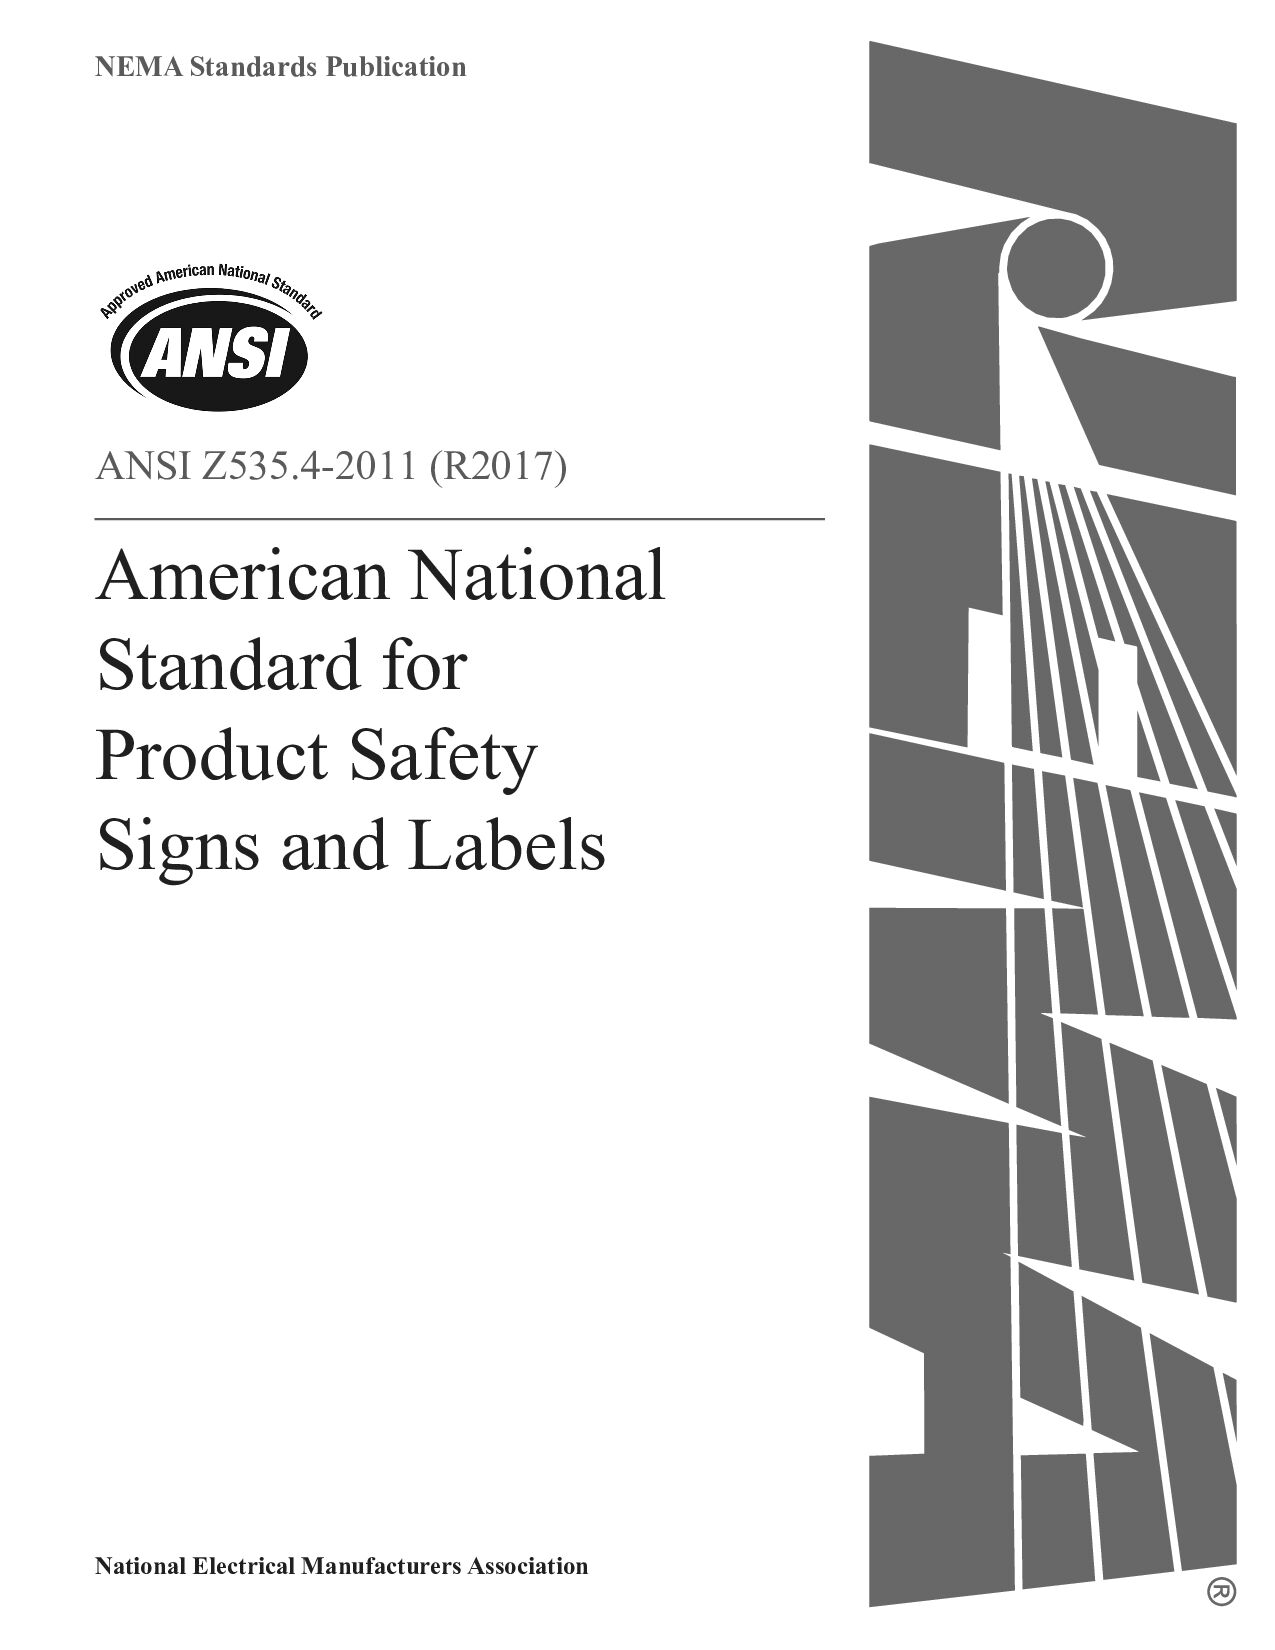 ANSI Z535.4-2011(2017)